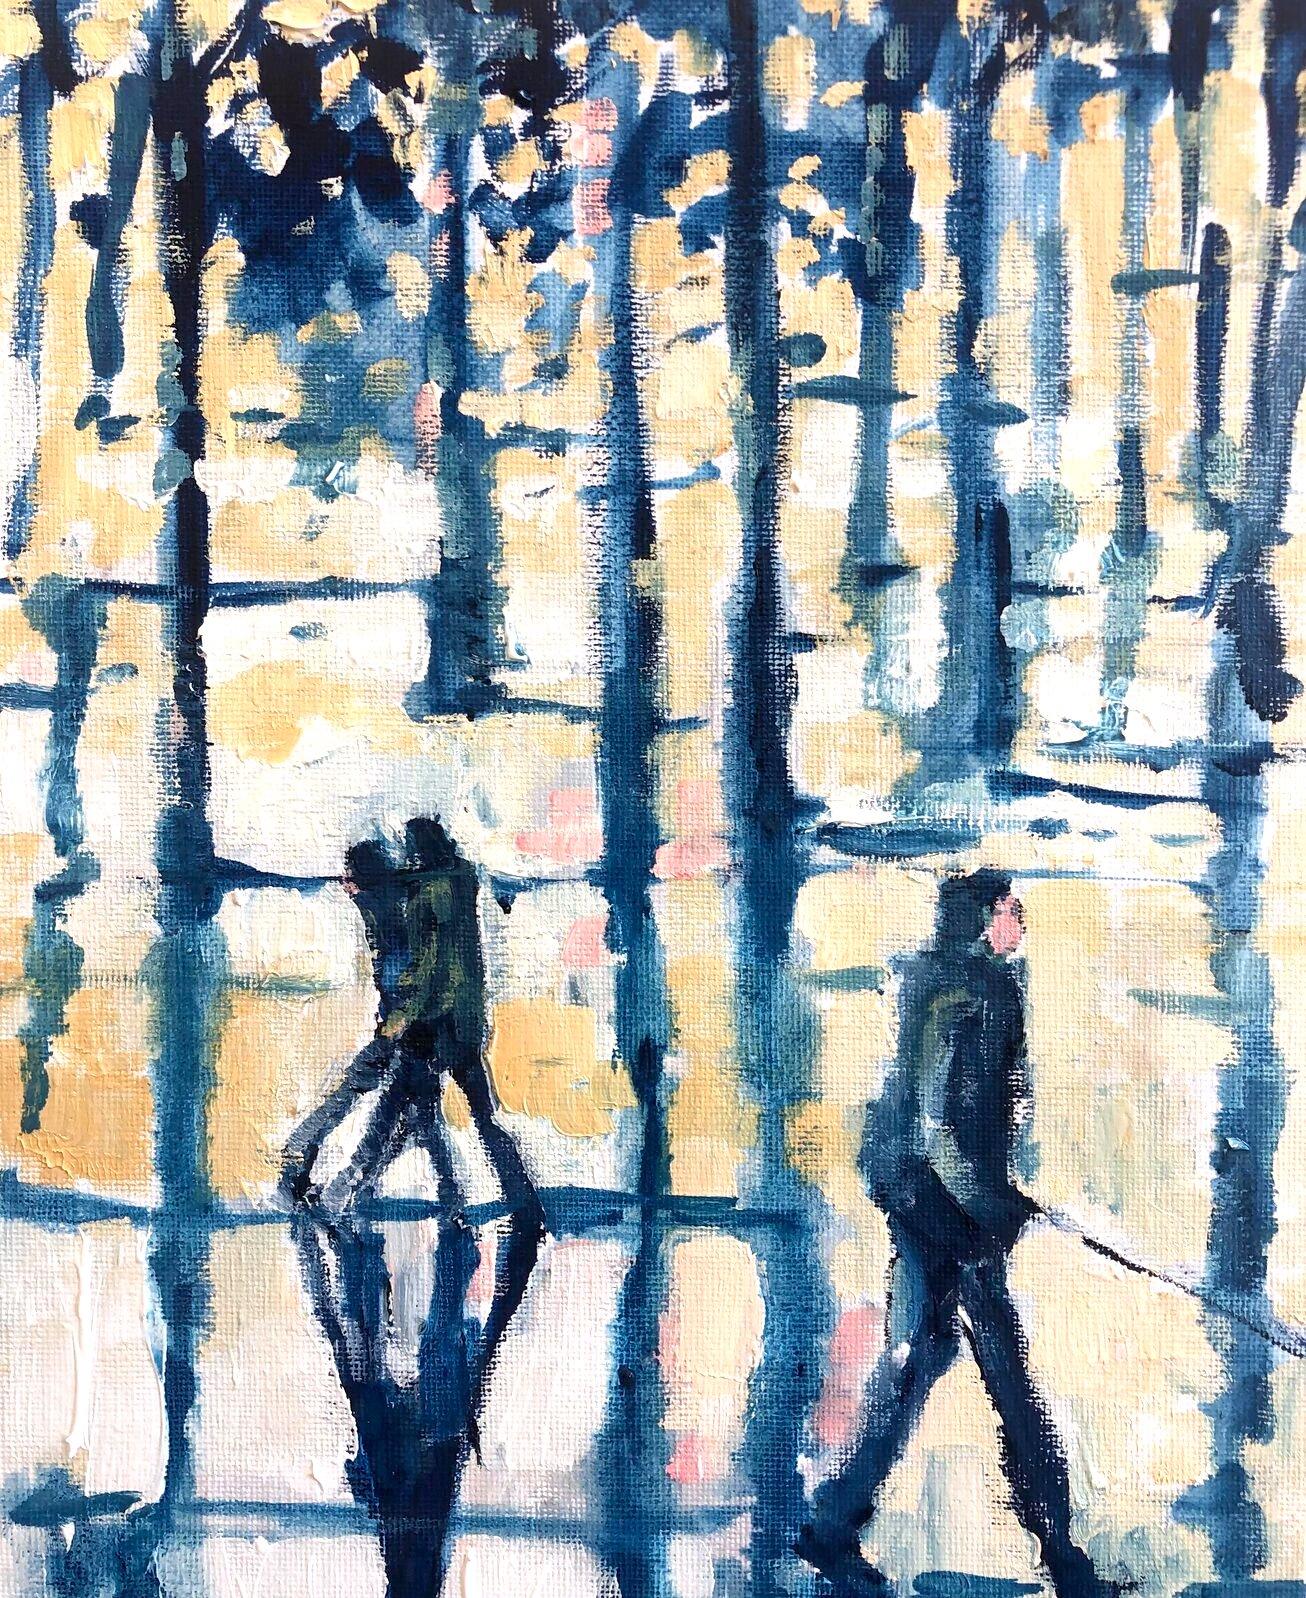 A Walk in The Park - impressionnisme original - paysage figuratif - peinture à l'huile - art